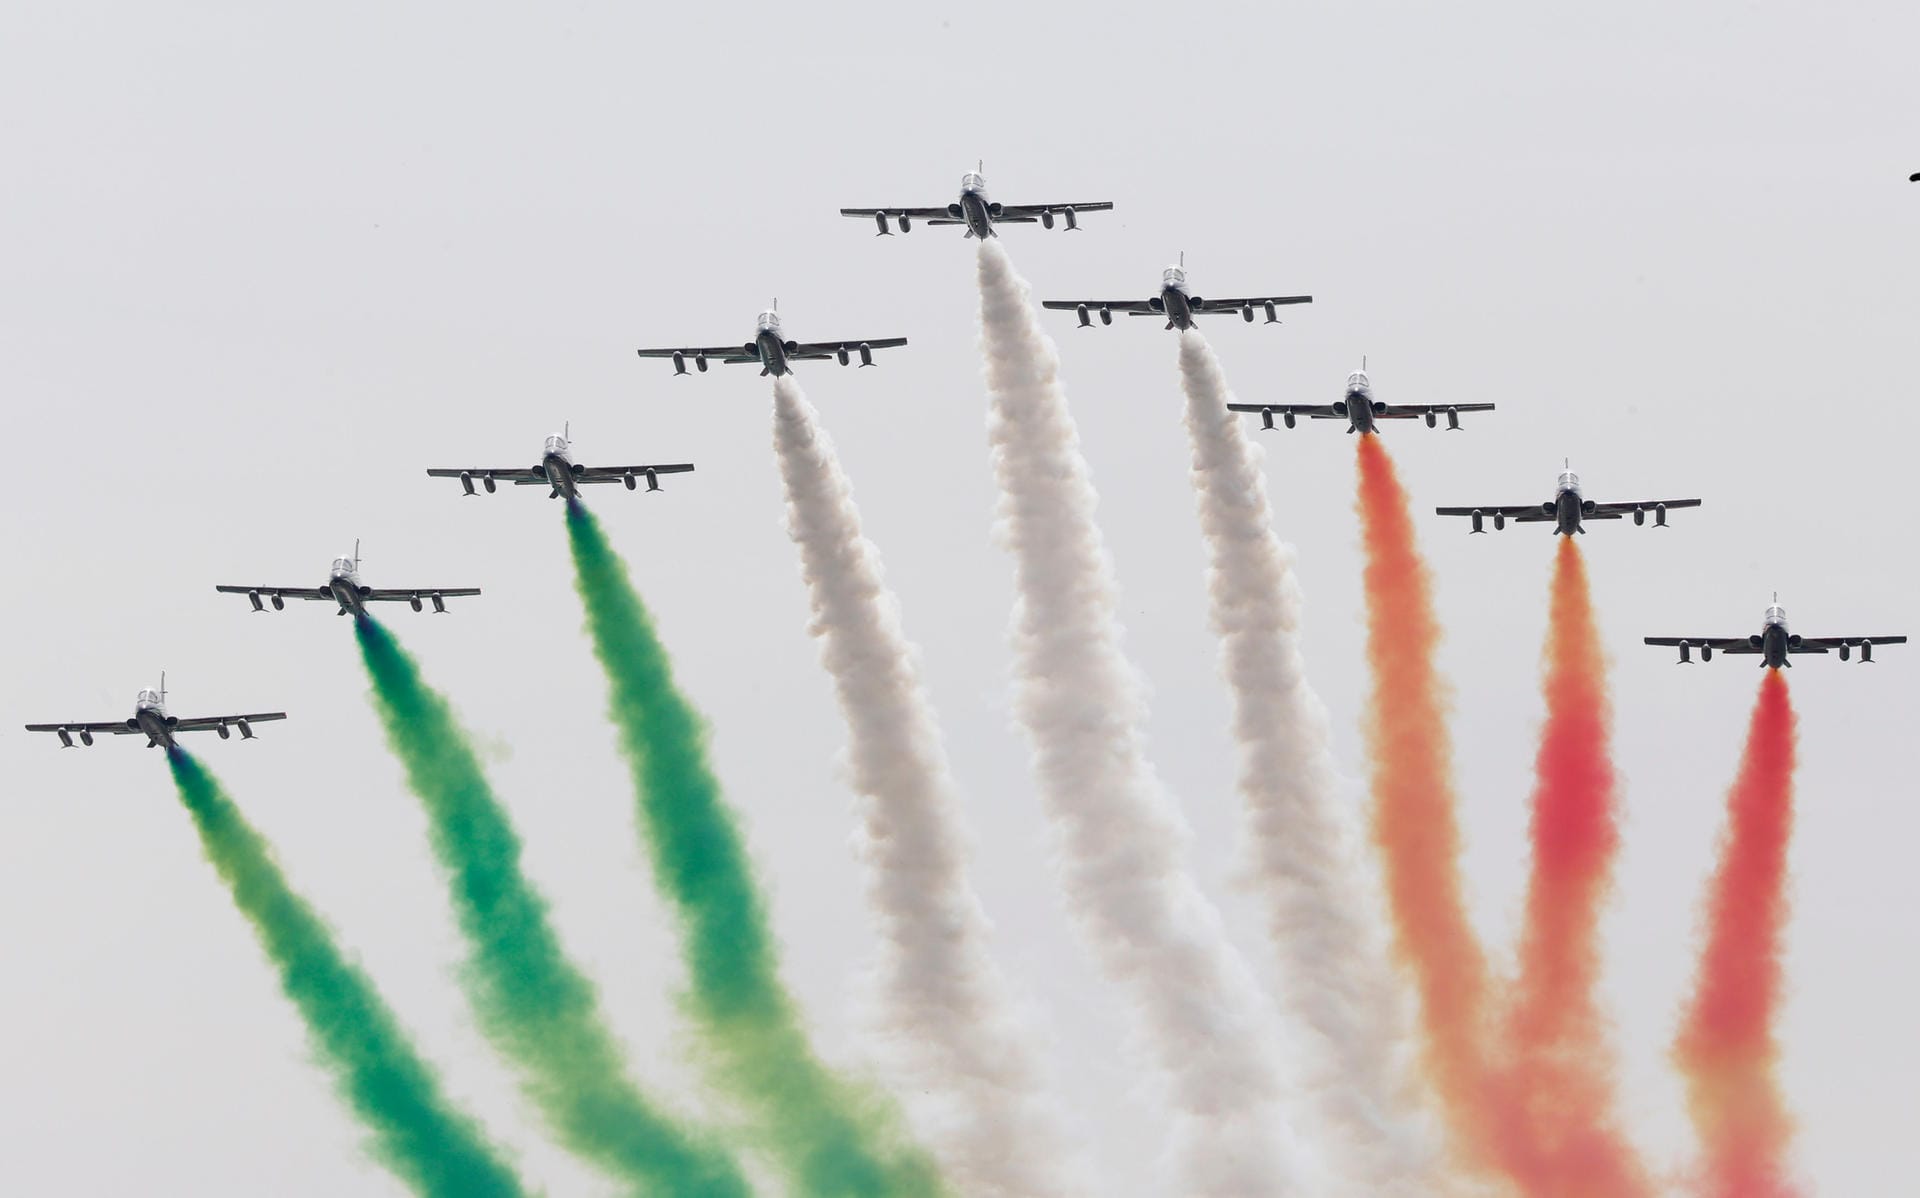 Während auf der Rennstrecke die italienische Nationalhymne erschallt, malen dieser Piloten mit ihren Jets die Farben der italienschien Flagge an den Himmel.